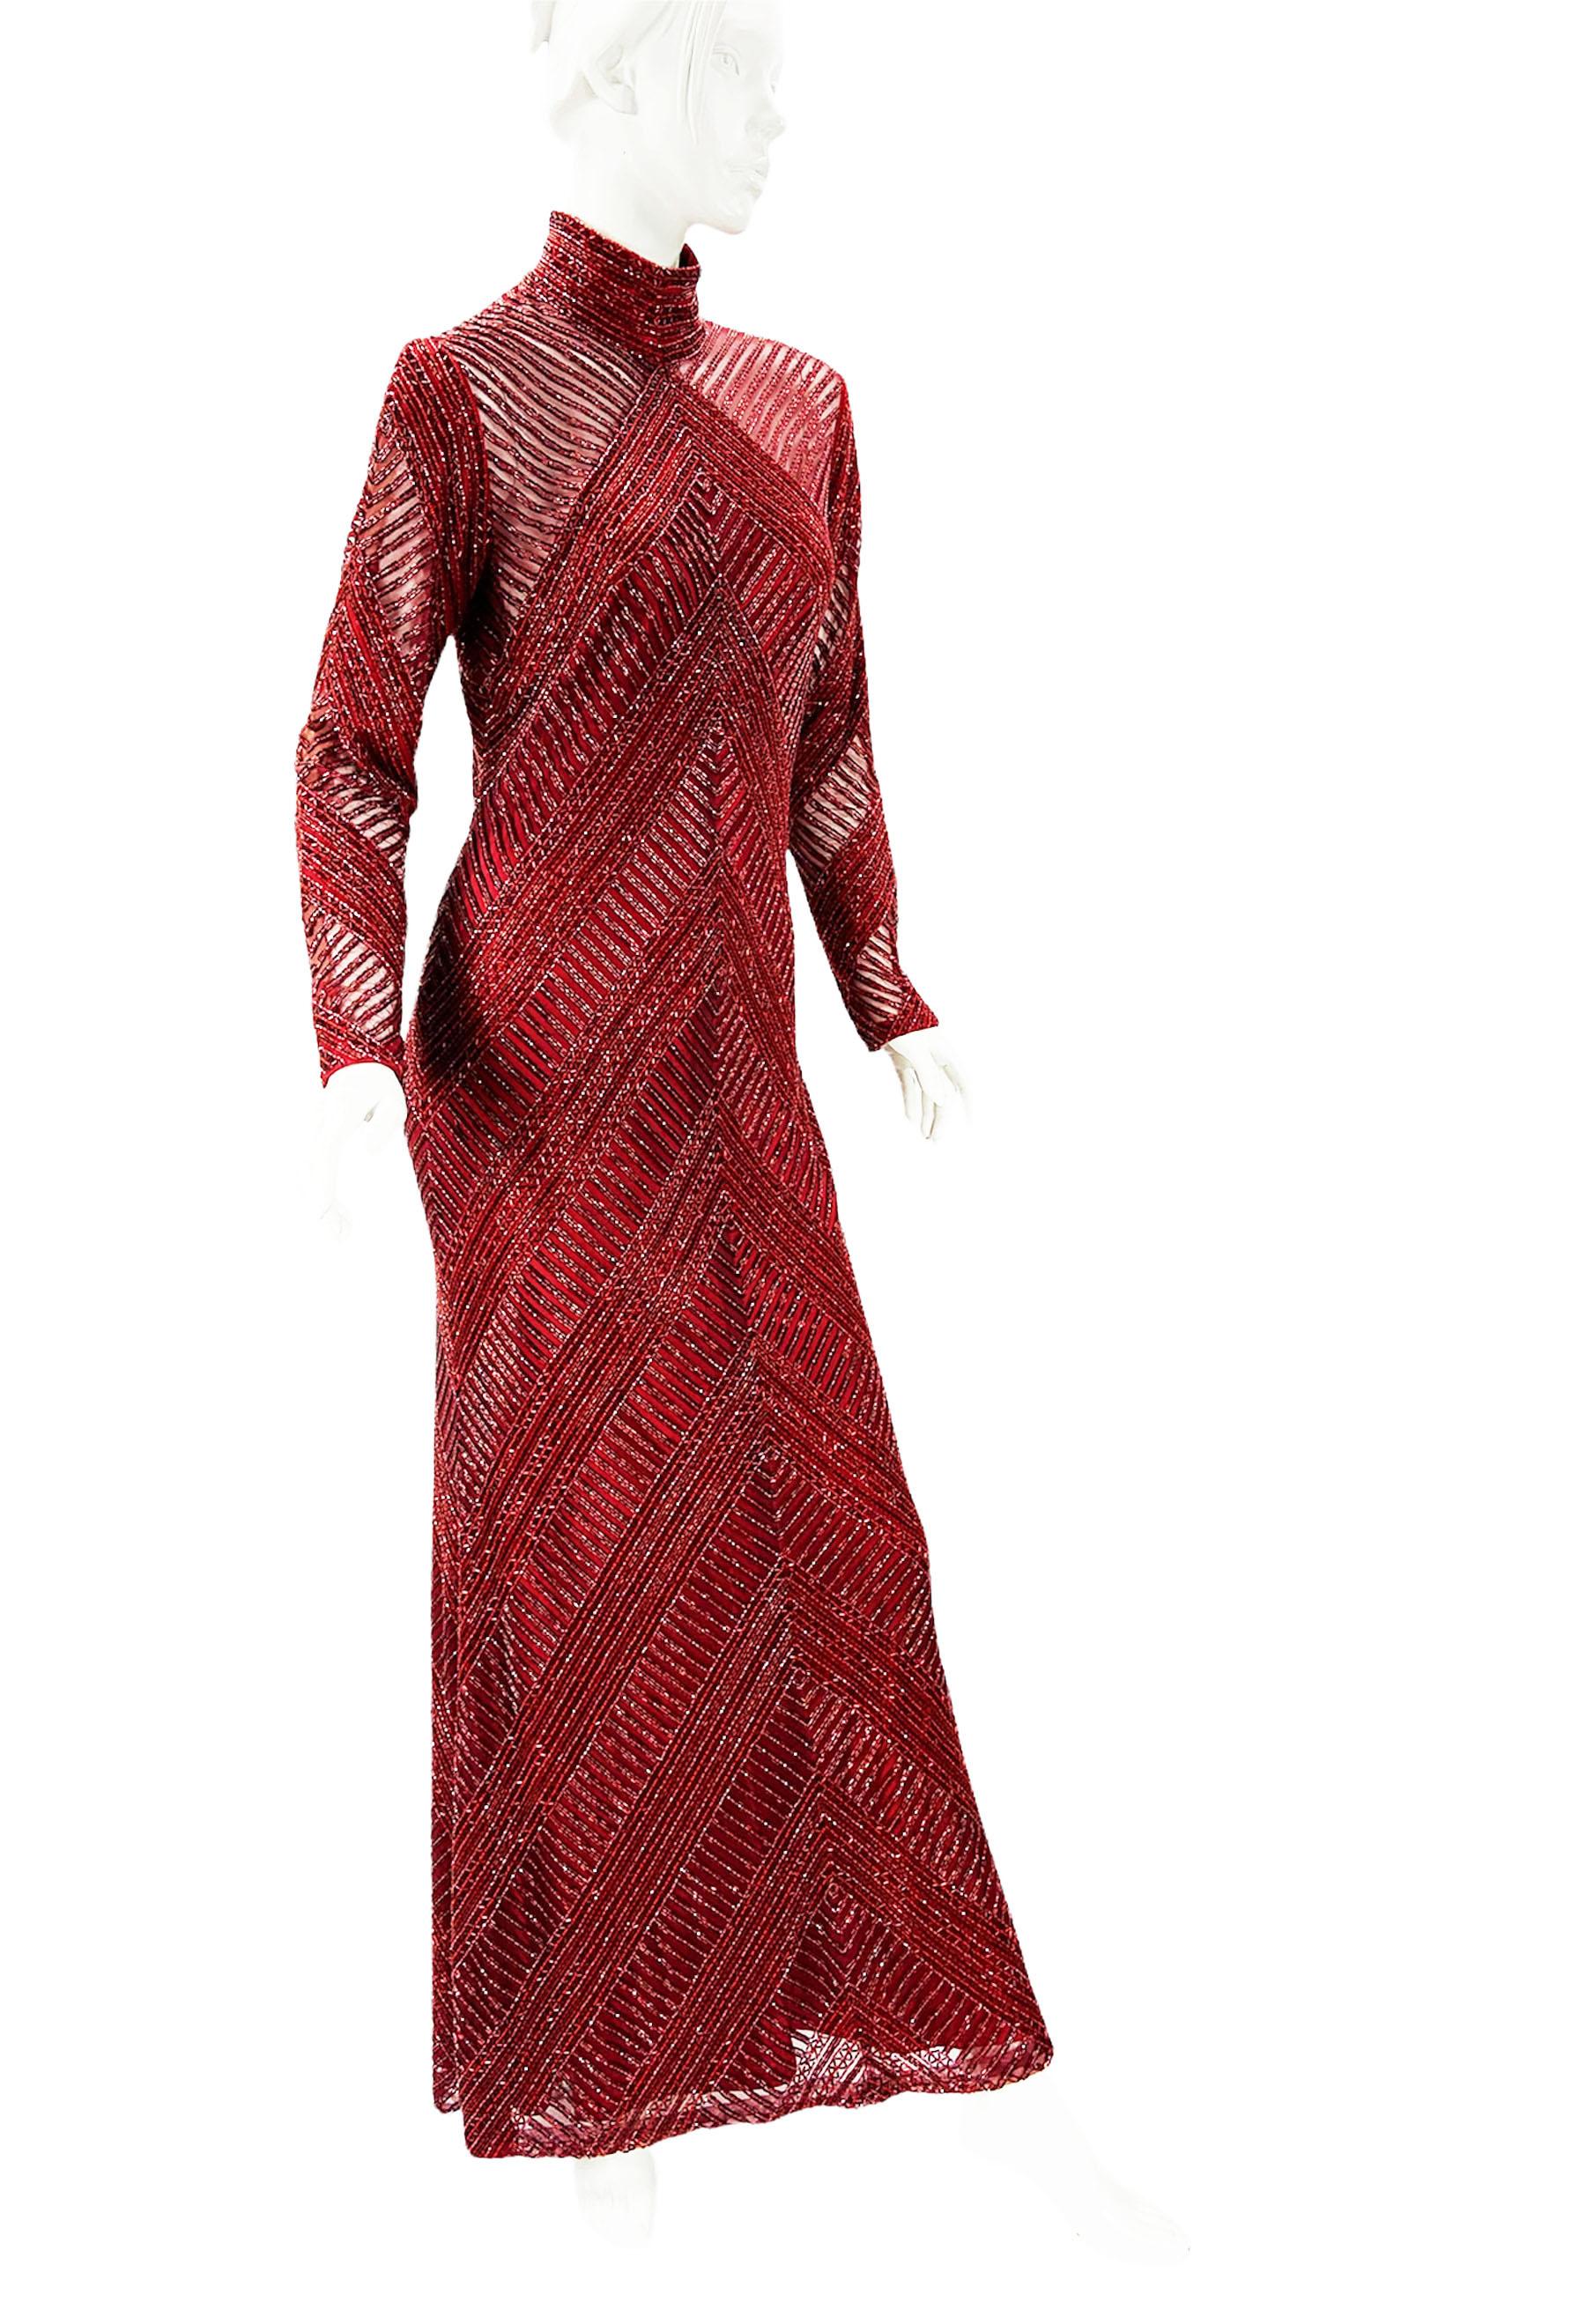 Vintage 80's Bob Mackie Voll Perlen Abendkleid Kleid
Size Label Missing - Bitte überprüfen Sie die Maßangaben
Rollkragen-Abendkleid mit Perlen in Burgunderrot und roten Glasperlen über dem Netz.
Vollständig mit rotem Satin gefüttert, die langen